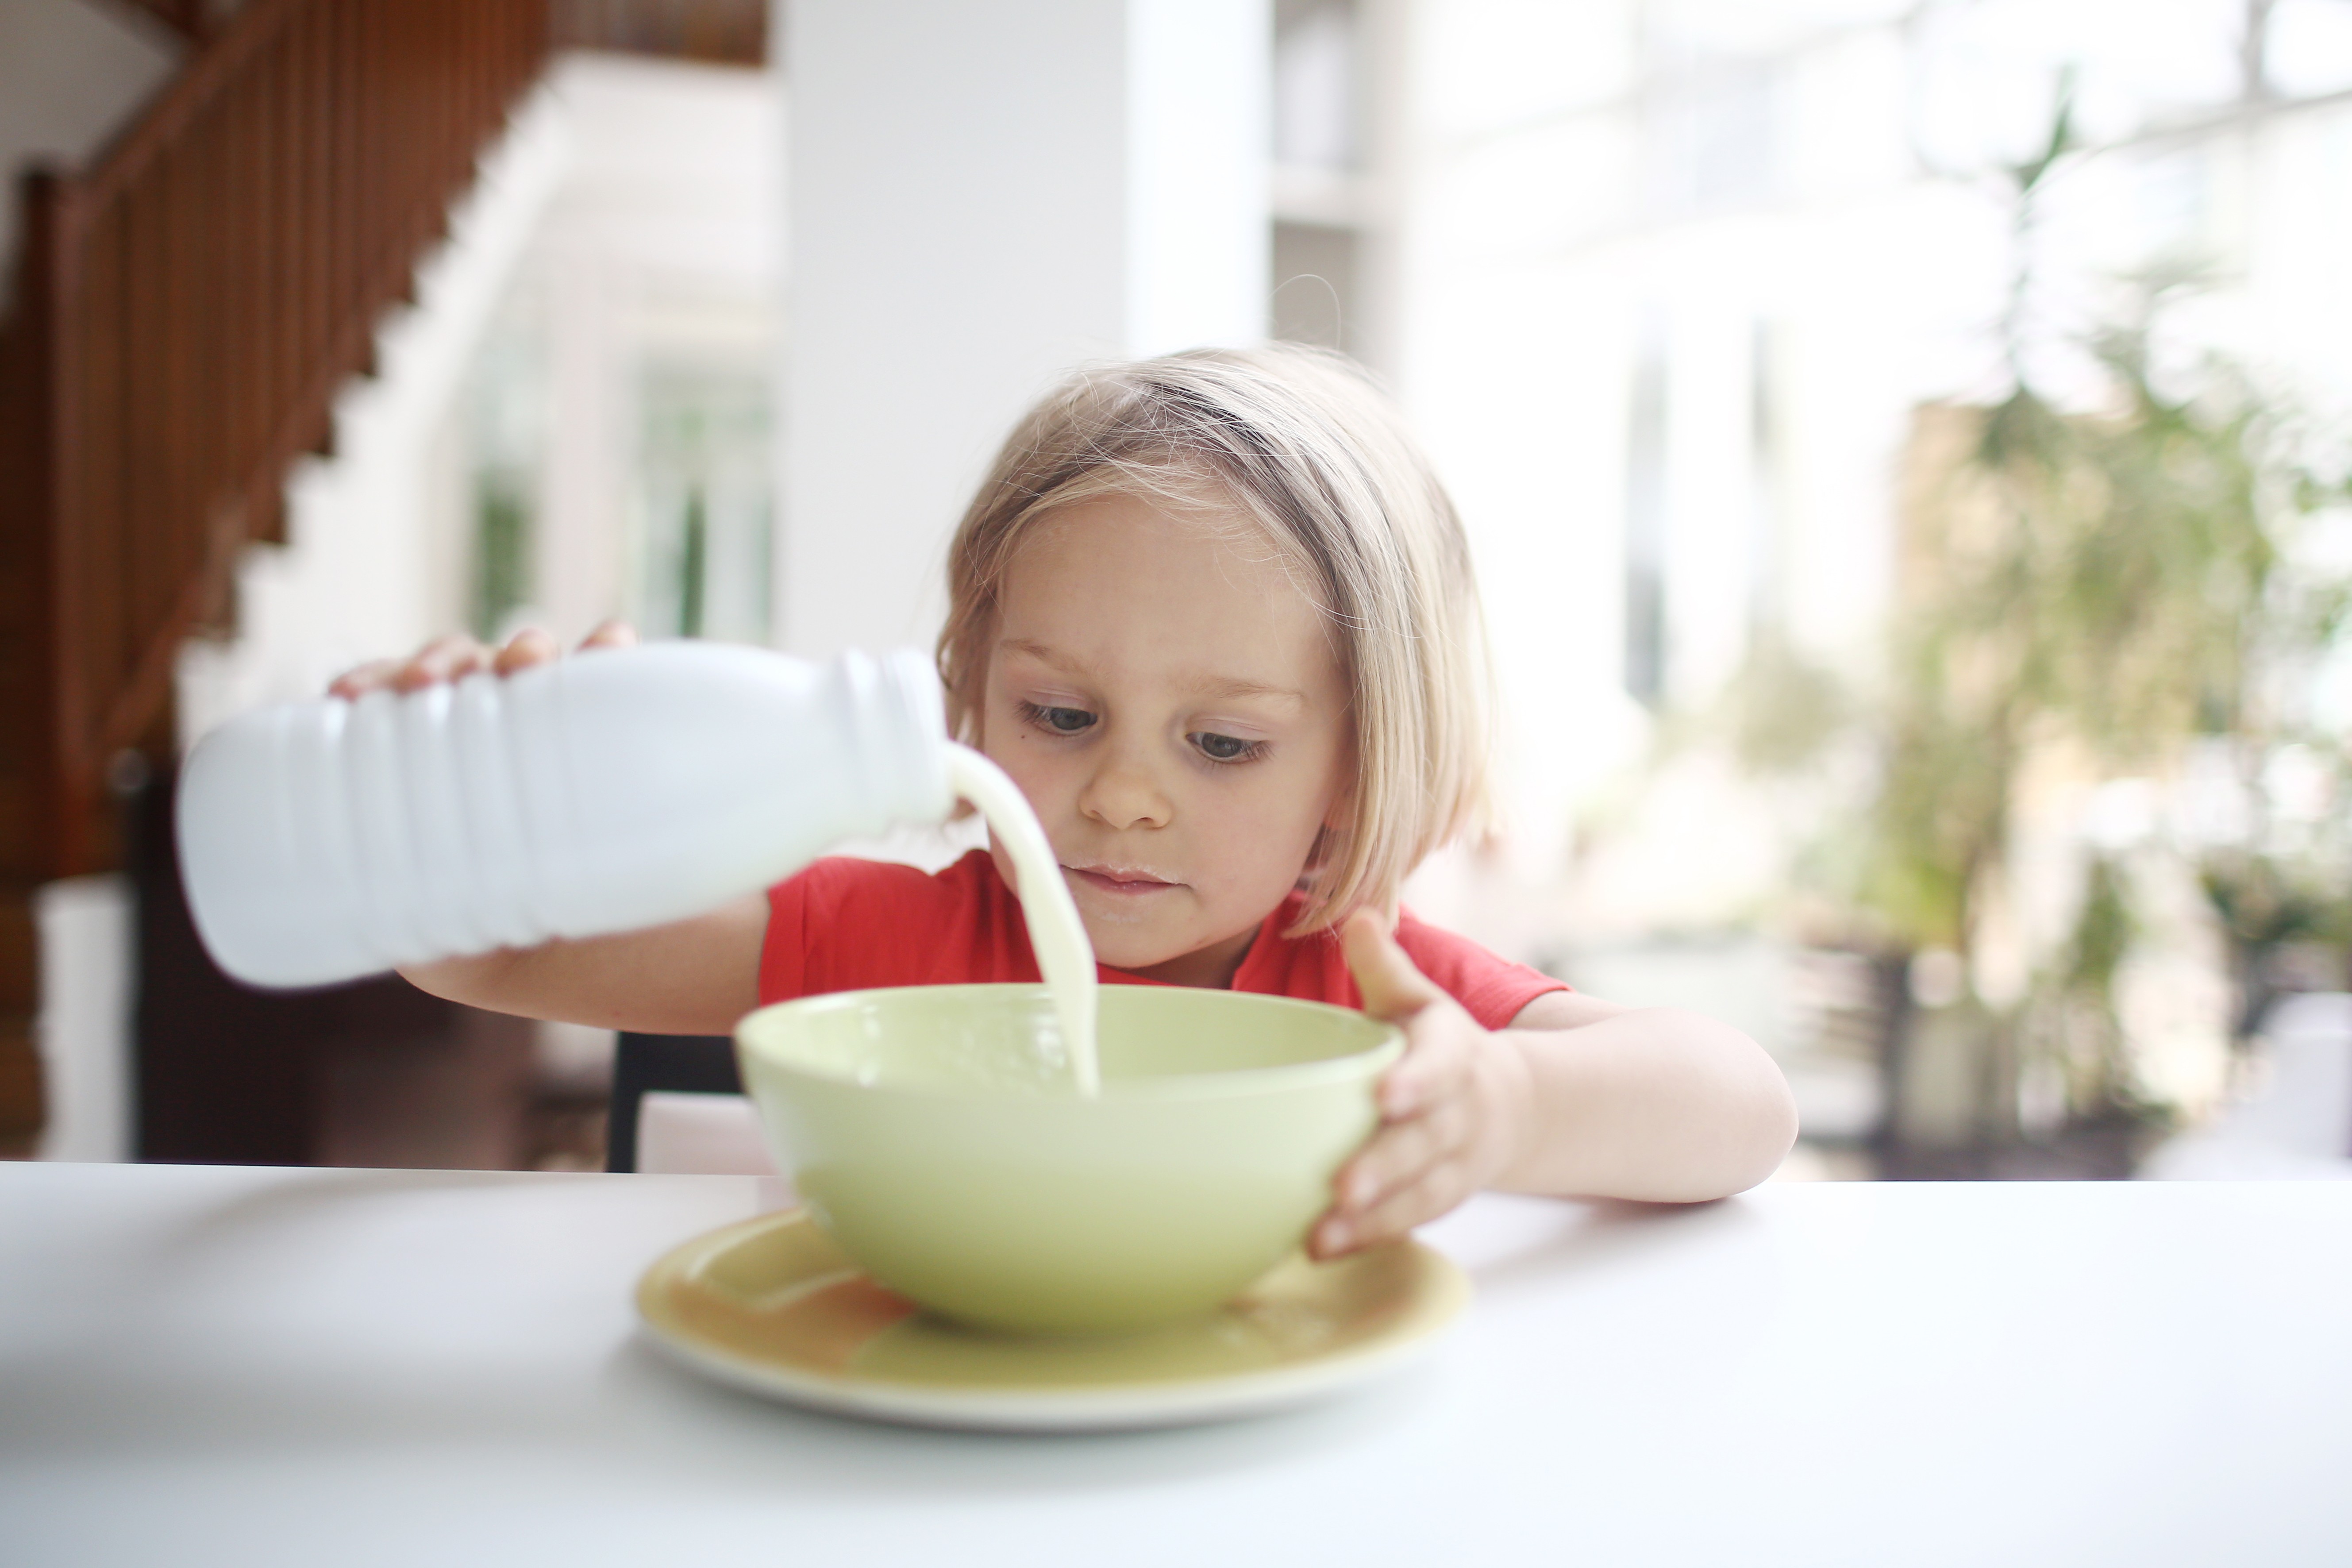 Criança despejando leite em vasilha (Foto: Getty Images)